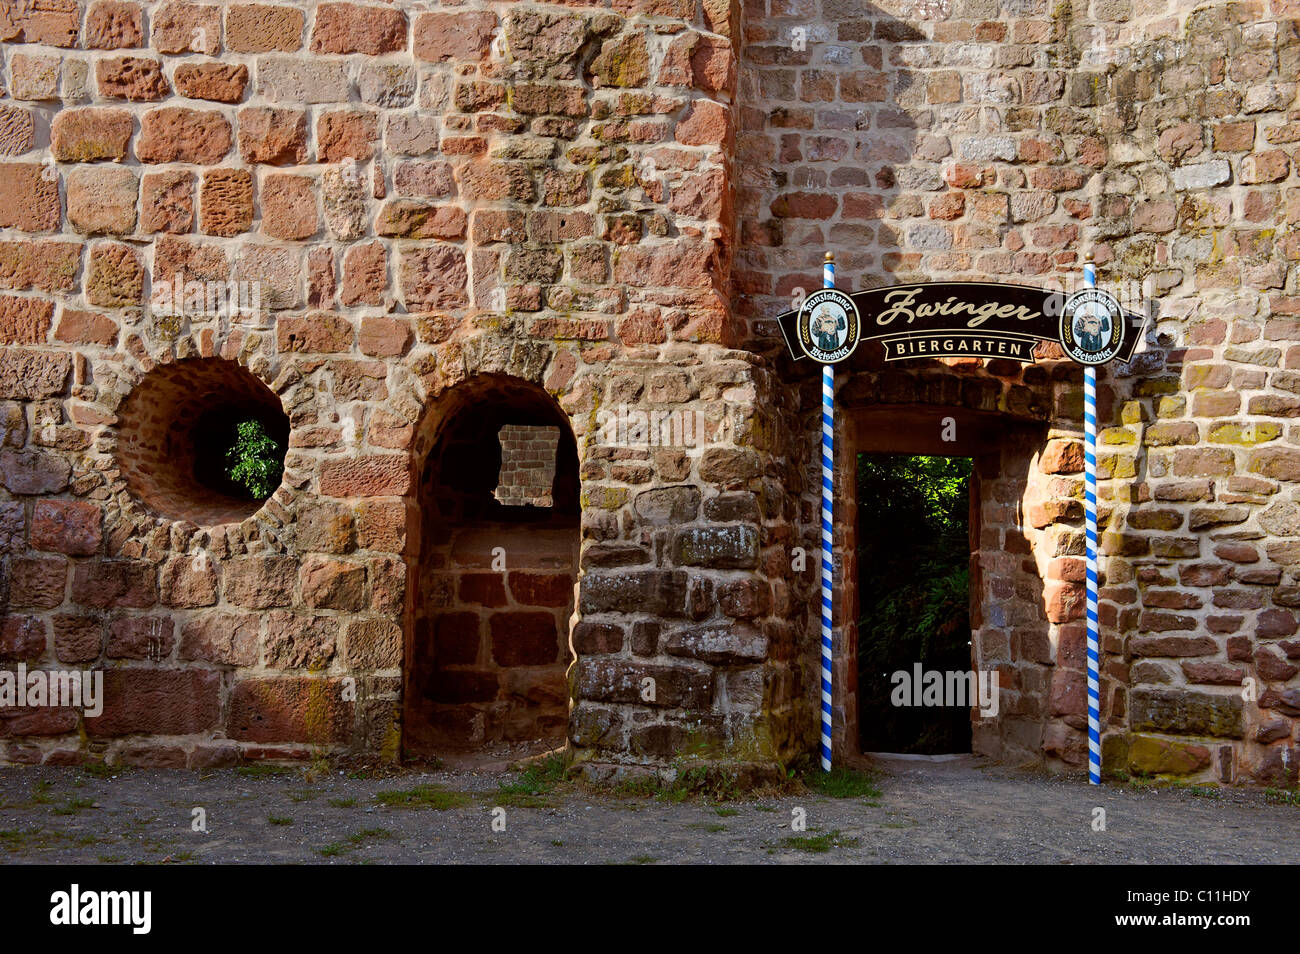 Dungeon in der alten Stadtmauer, heute ein Restaurant, Ottweiler, Saarland, Deutschland, Europa Stockfoto